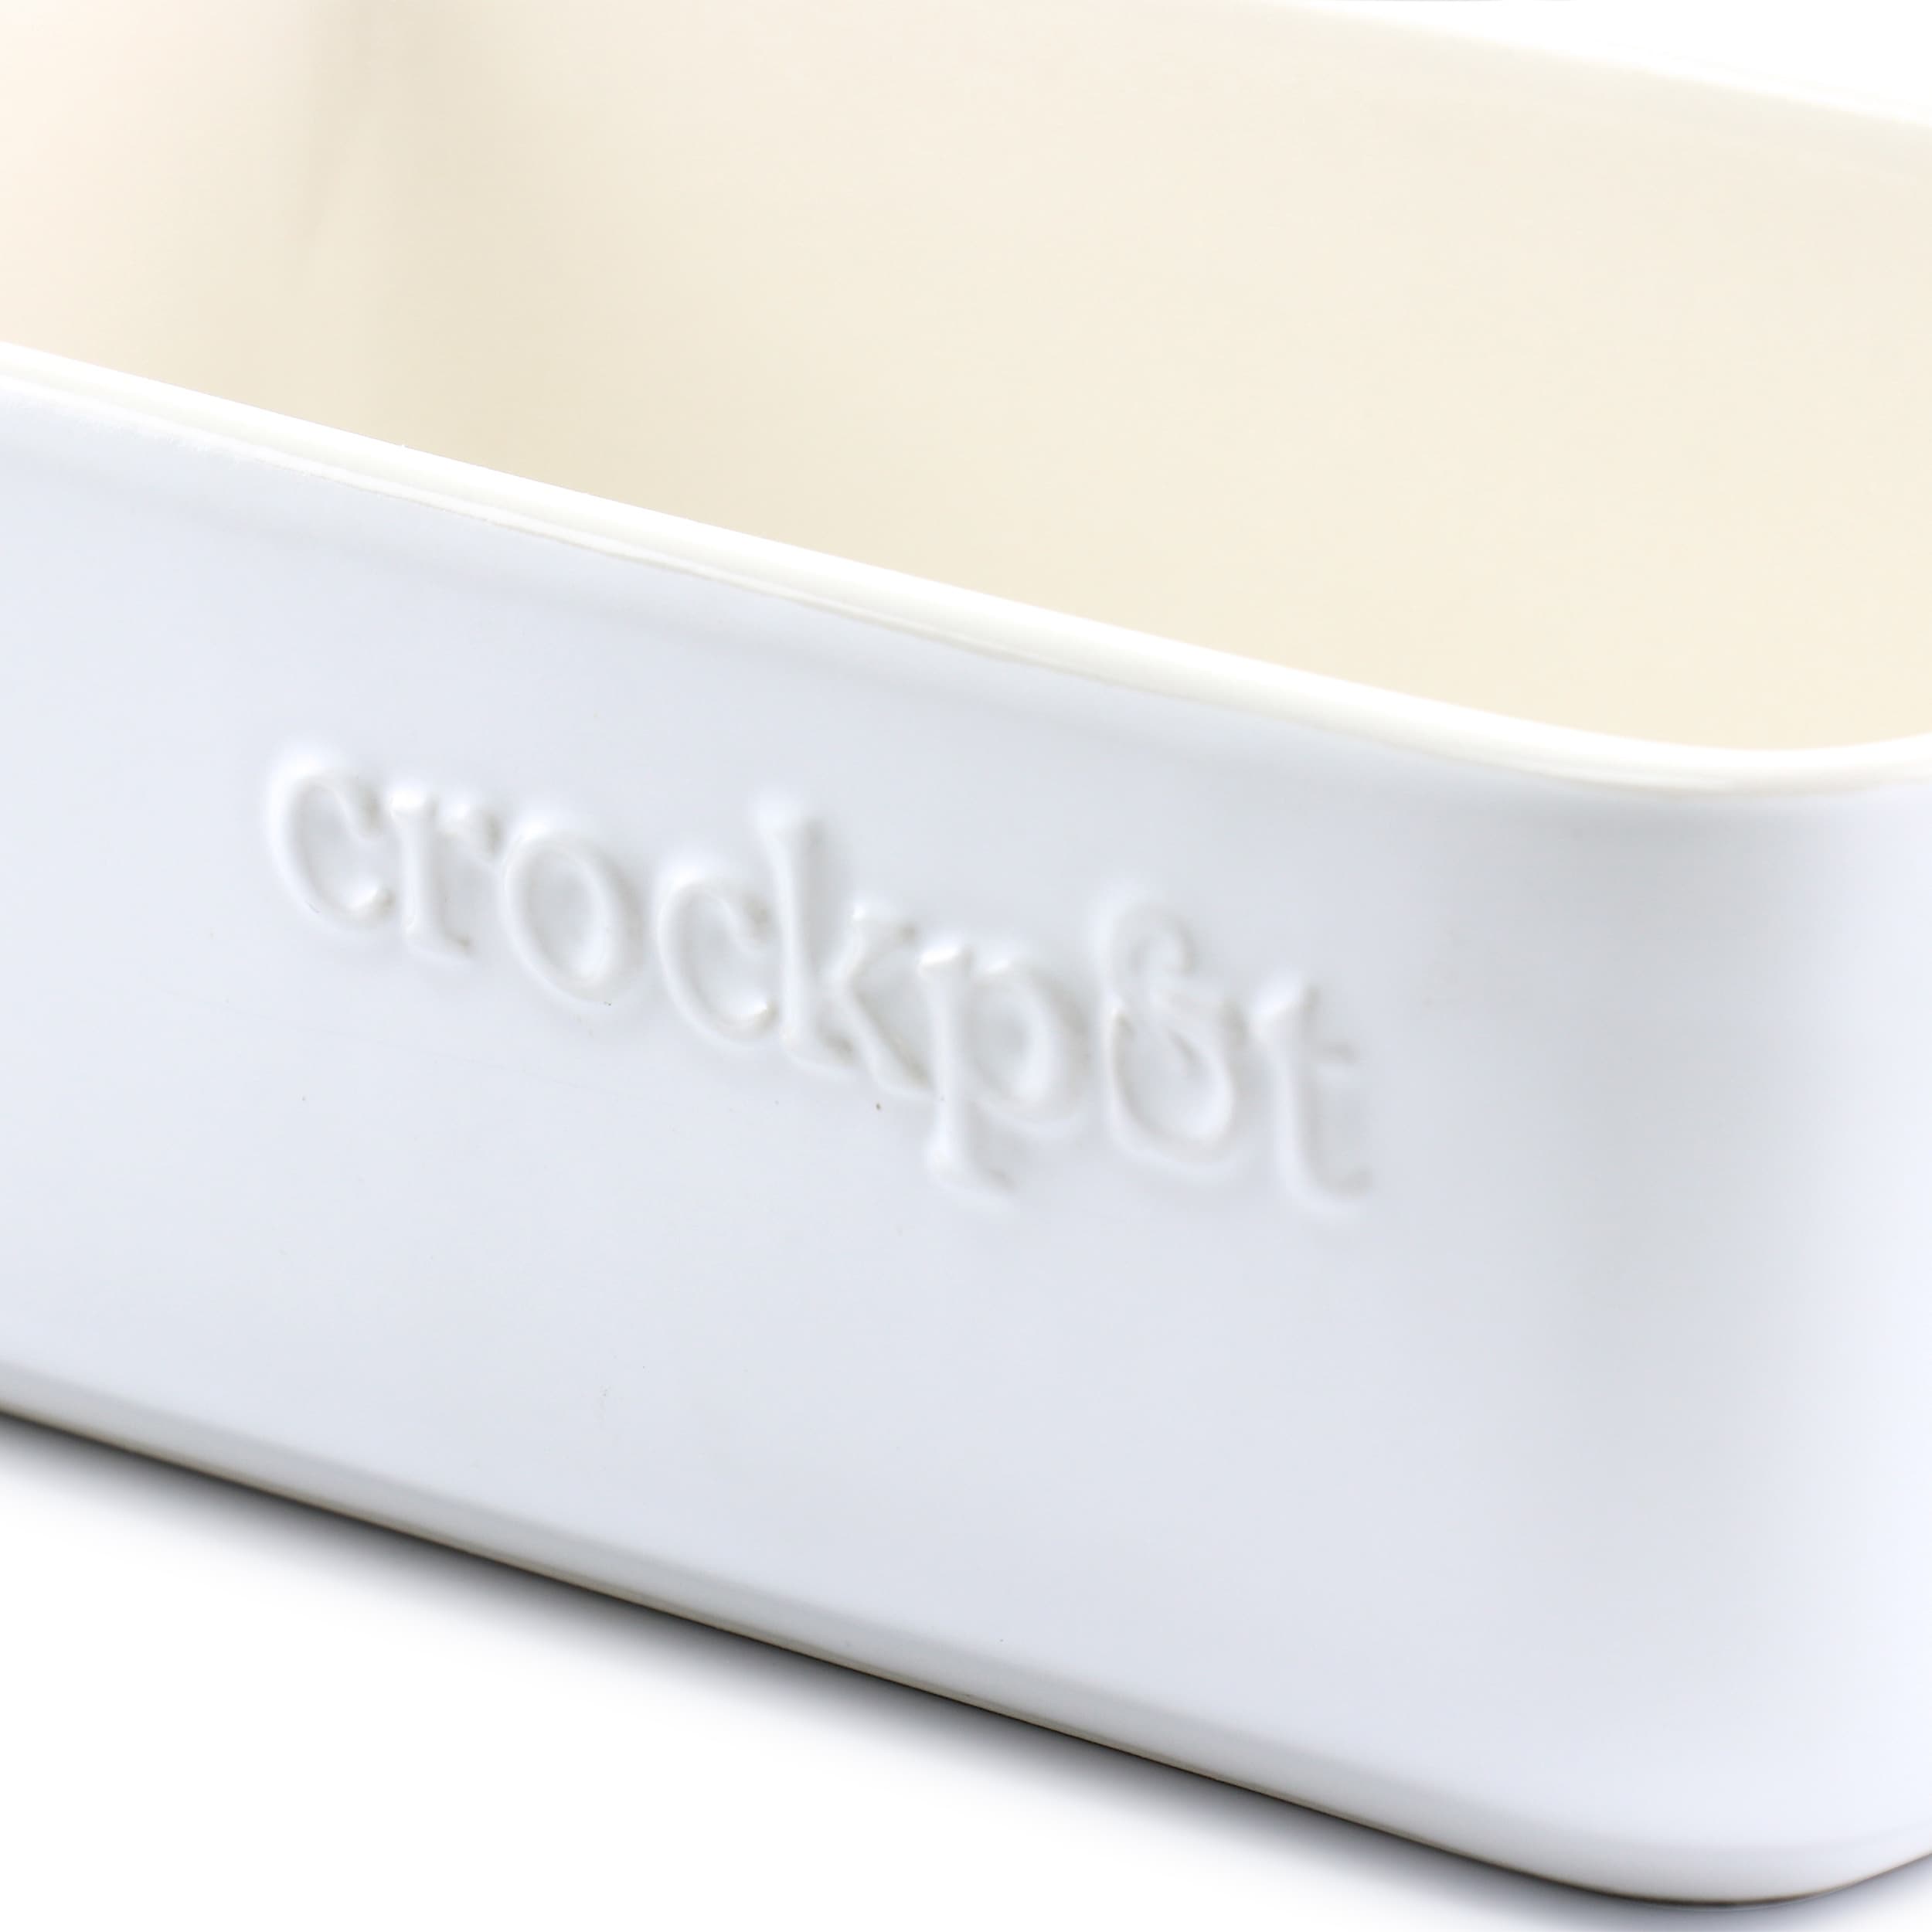 Crock-Pot Artisan 5.6 qt. Rectangular Stoneware Bake Pan in Cream